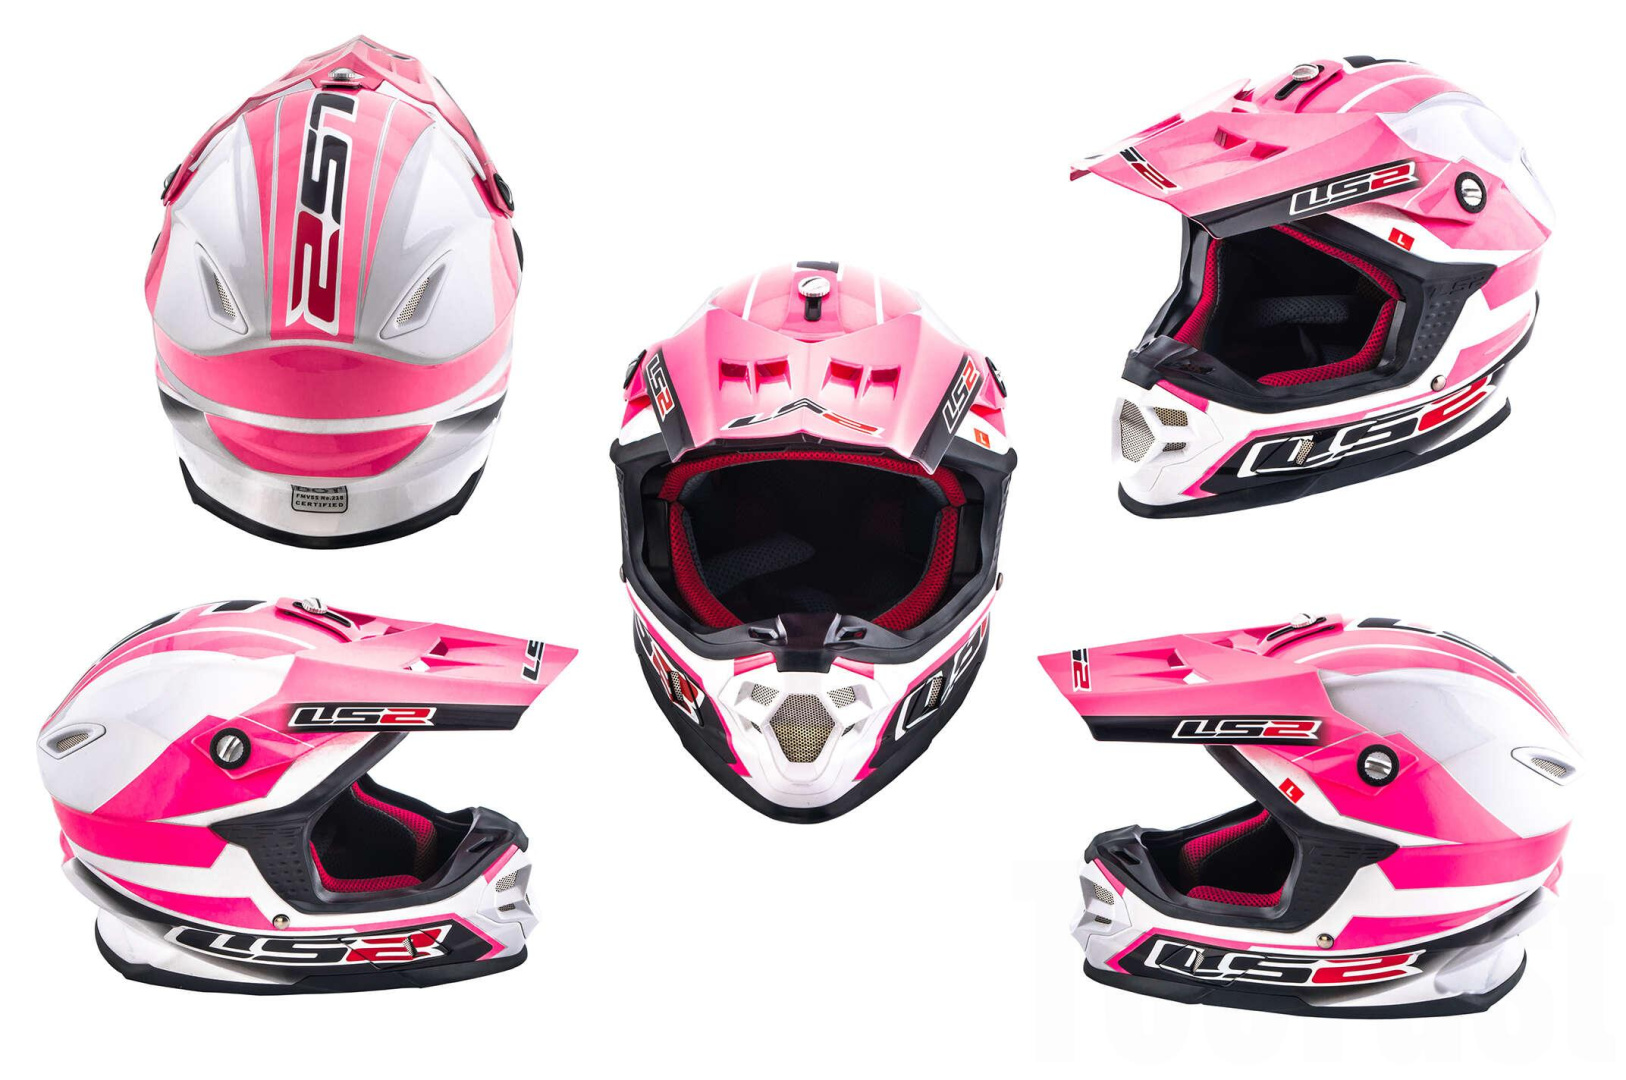 Шлем кроссовый   (mod:MX456) (size:L, бело-розовый)   LS-2